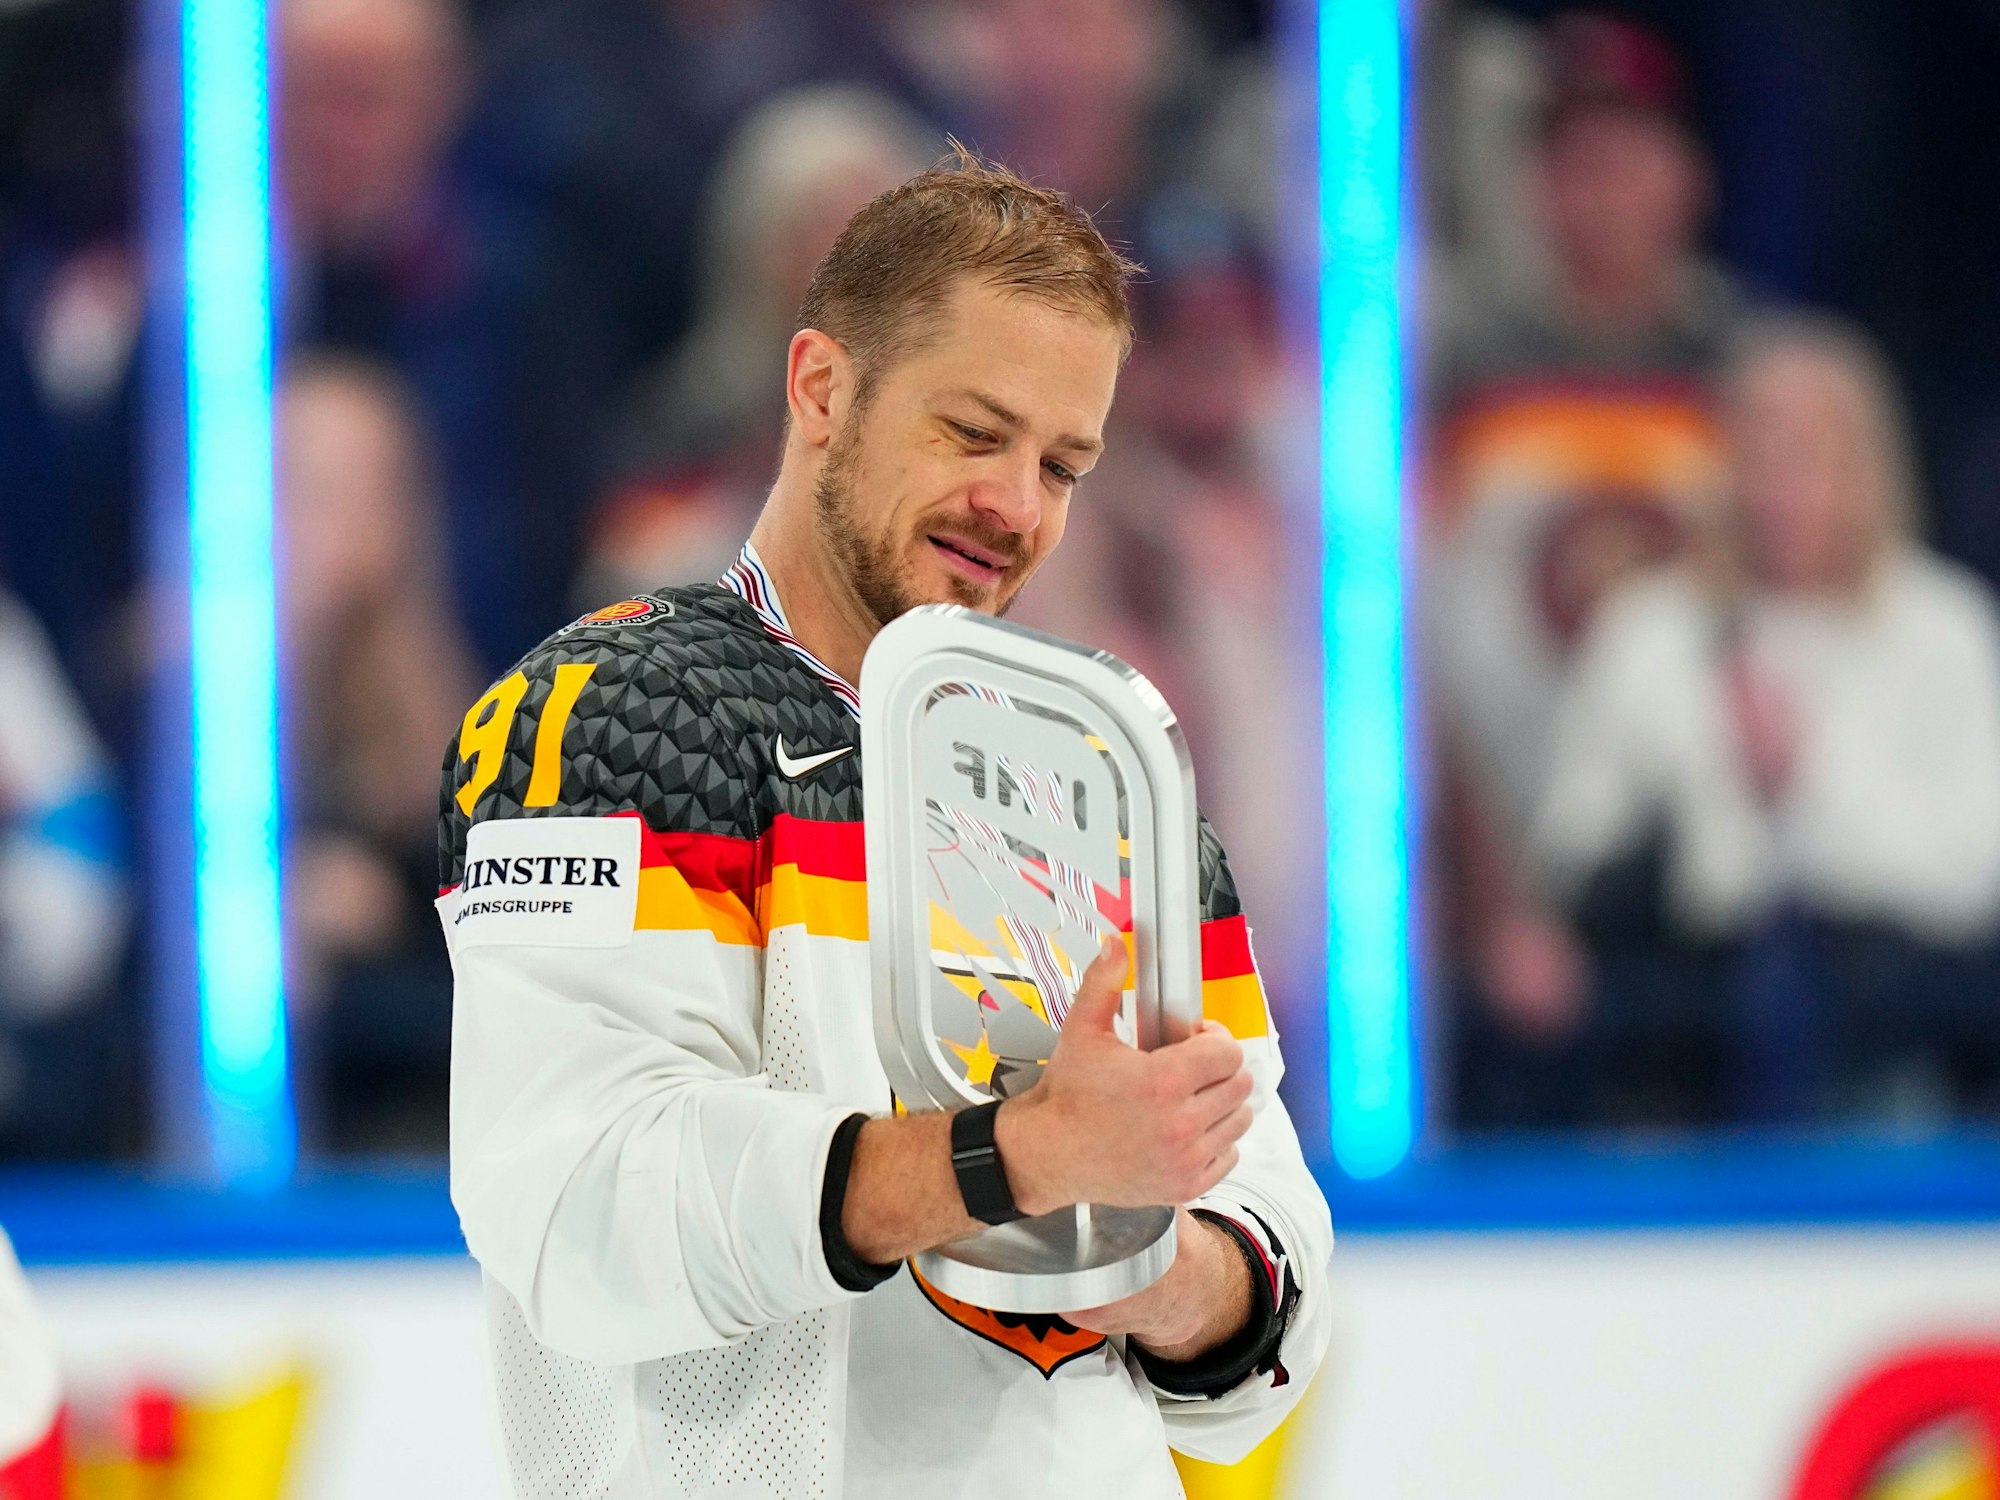 Deutschlands Moritz Müller hält einen Pokal, nachdem sein Team die Silbermedaille bei der WM 2023 gewonnen hat.



Auch auf den zweiten Platz können die deutschen Eishockeyspieler stolz sein.